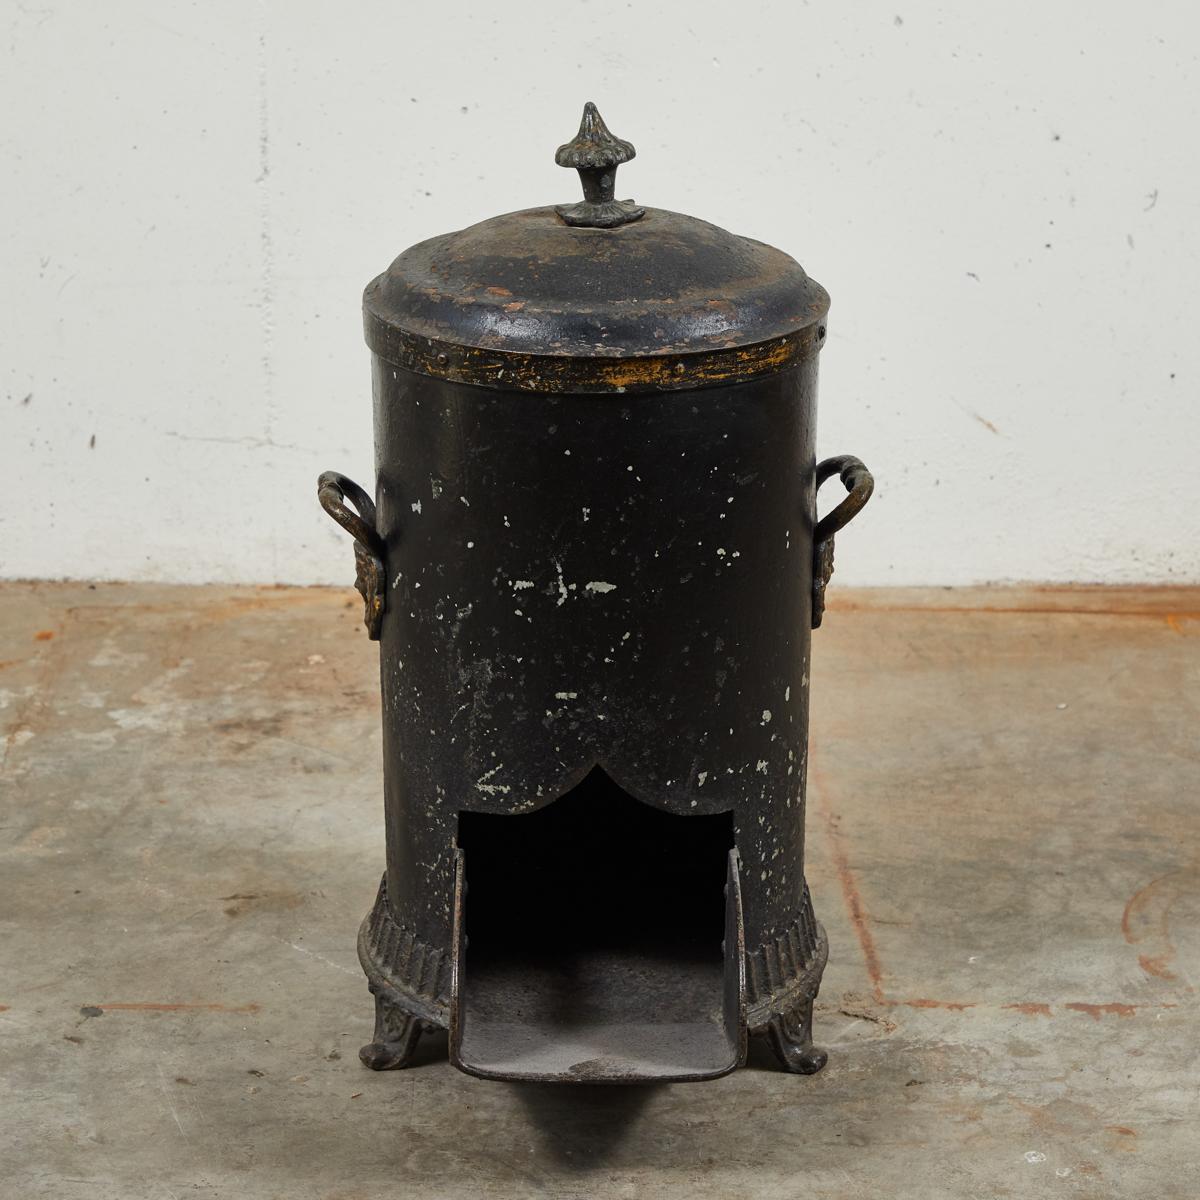 Sceau à charbon noir anglais du milieu du 19e siècle. Utilisé à l'origine pour stocker le charbon à proximité immédiate du feu et de la cheminée.